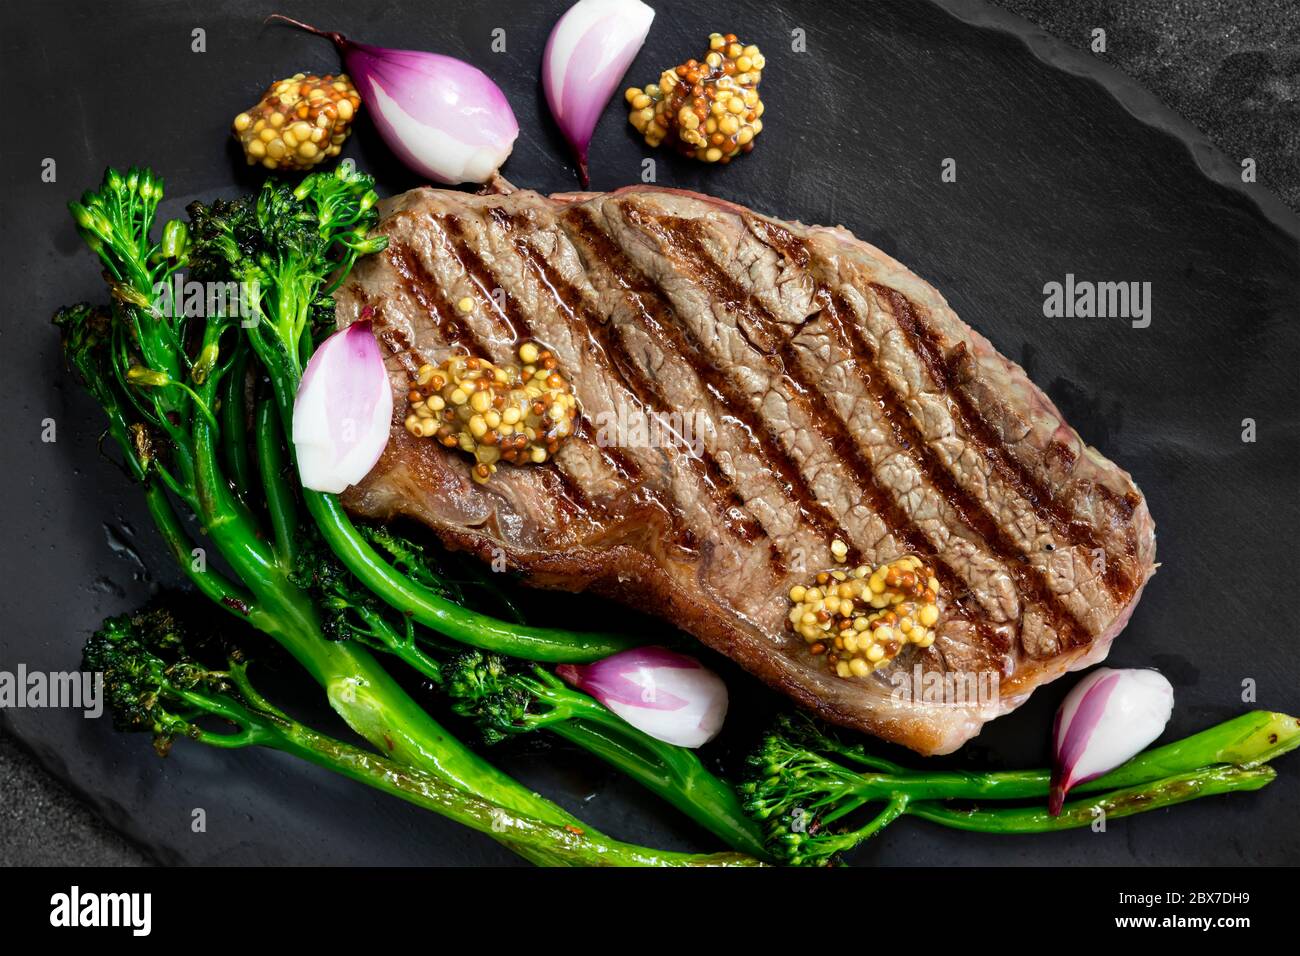 Steak de Porterhouse, grillé au brocolis, échalotes marinées et moutarde. Vue de dessus sur ardoise. Banque D'Images